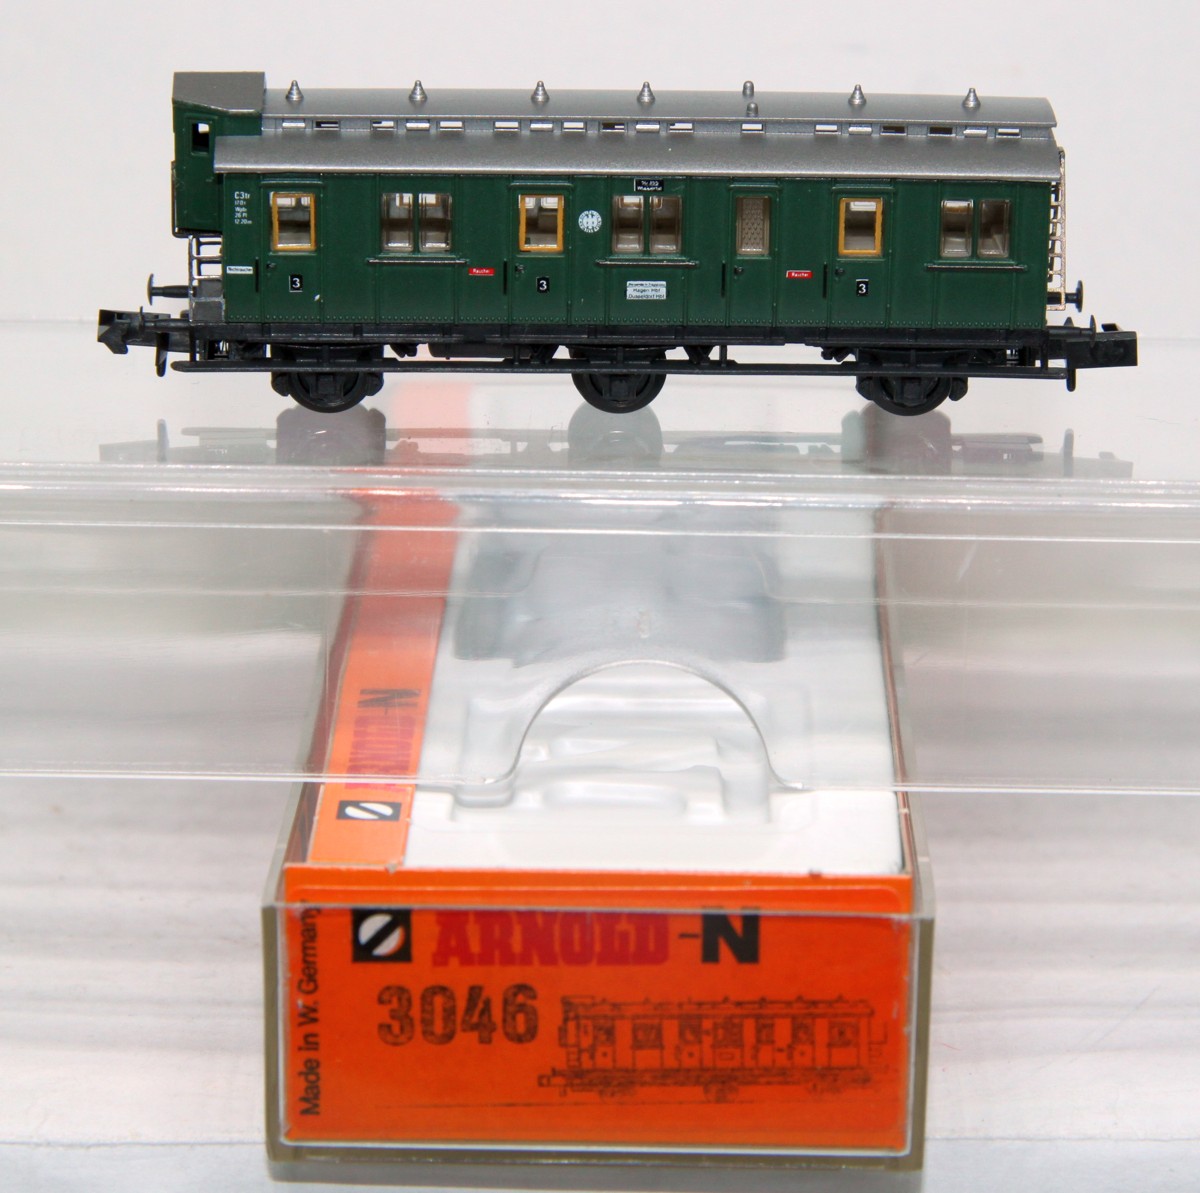 Arnold 3046, Abteilwagen mit Brhs, Gattung/Bauart C3tr Pr 04, 3-achsig, grün, DC, Spur N, in Originalverpackung